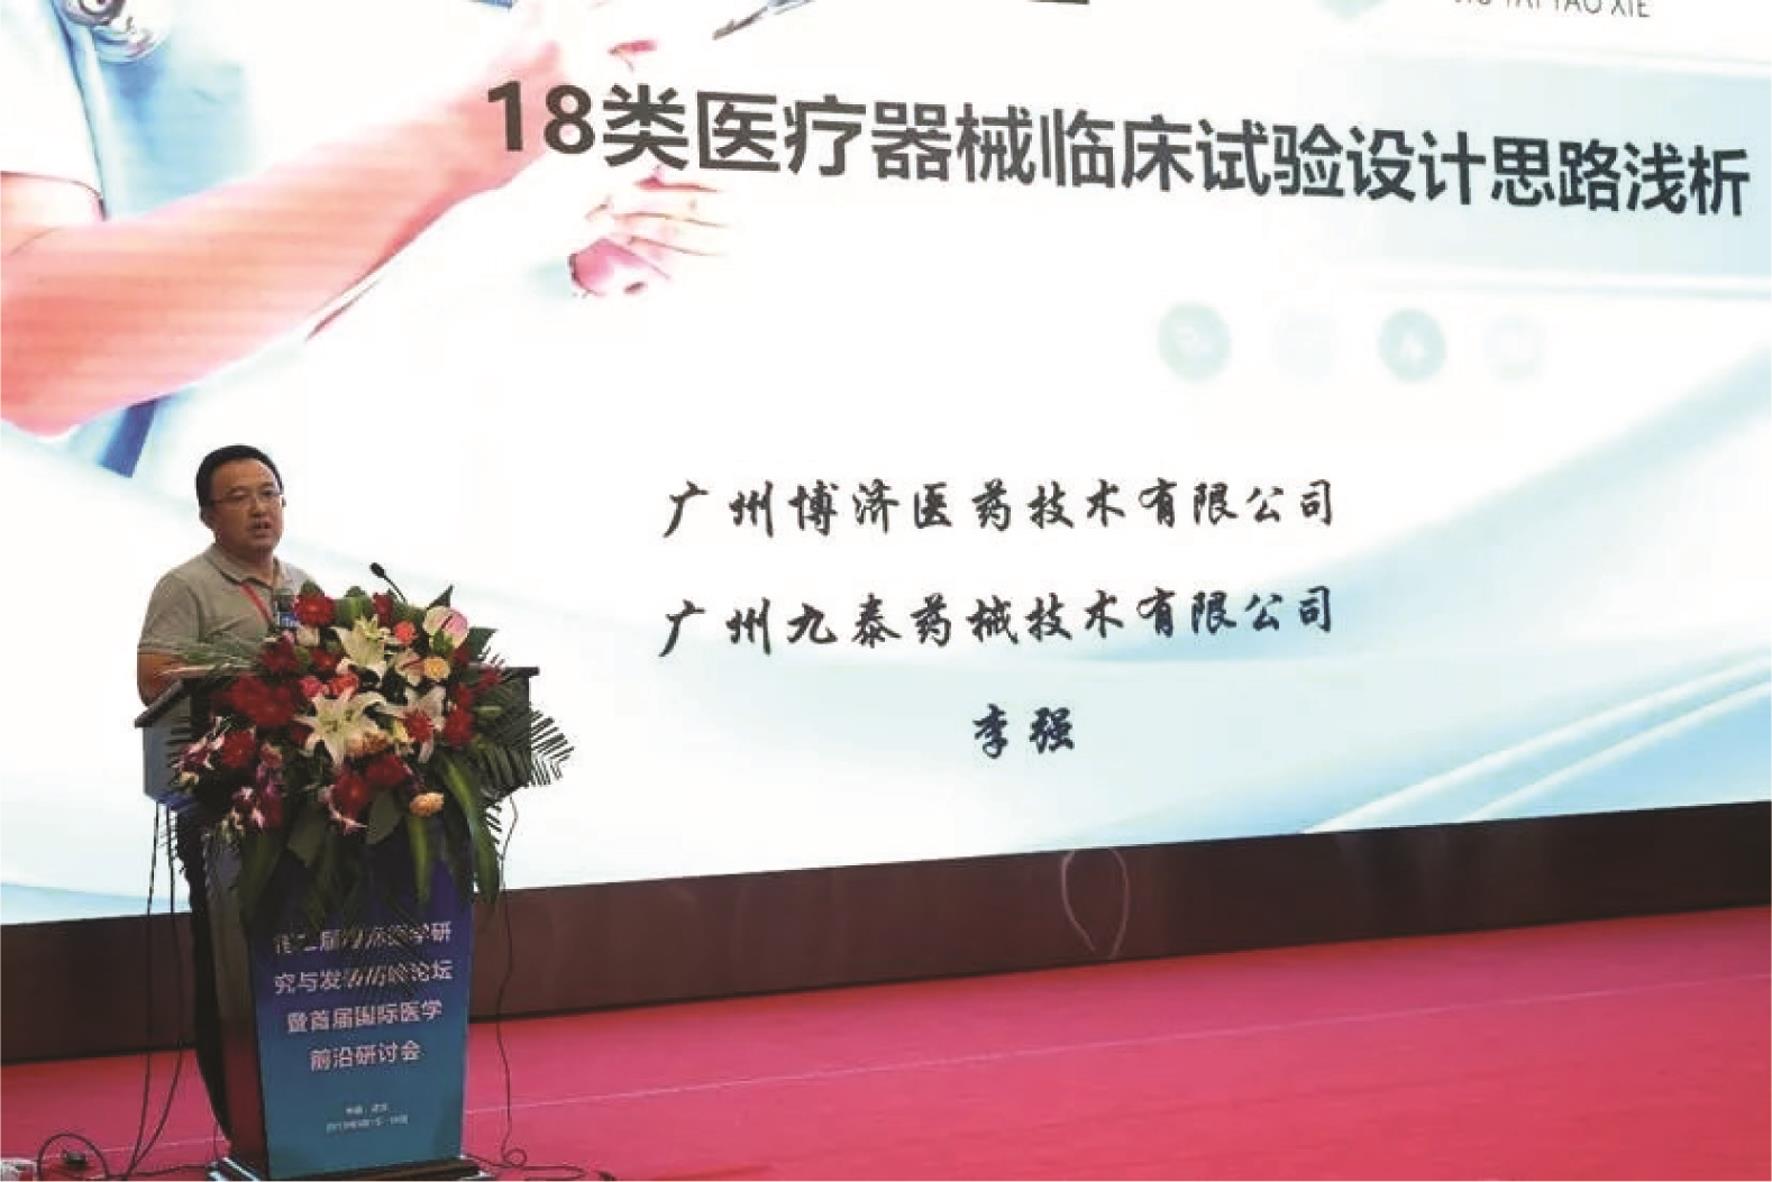 李强总经理发表演讲。